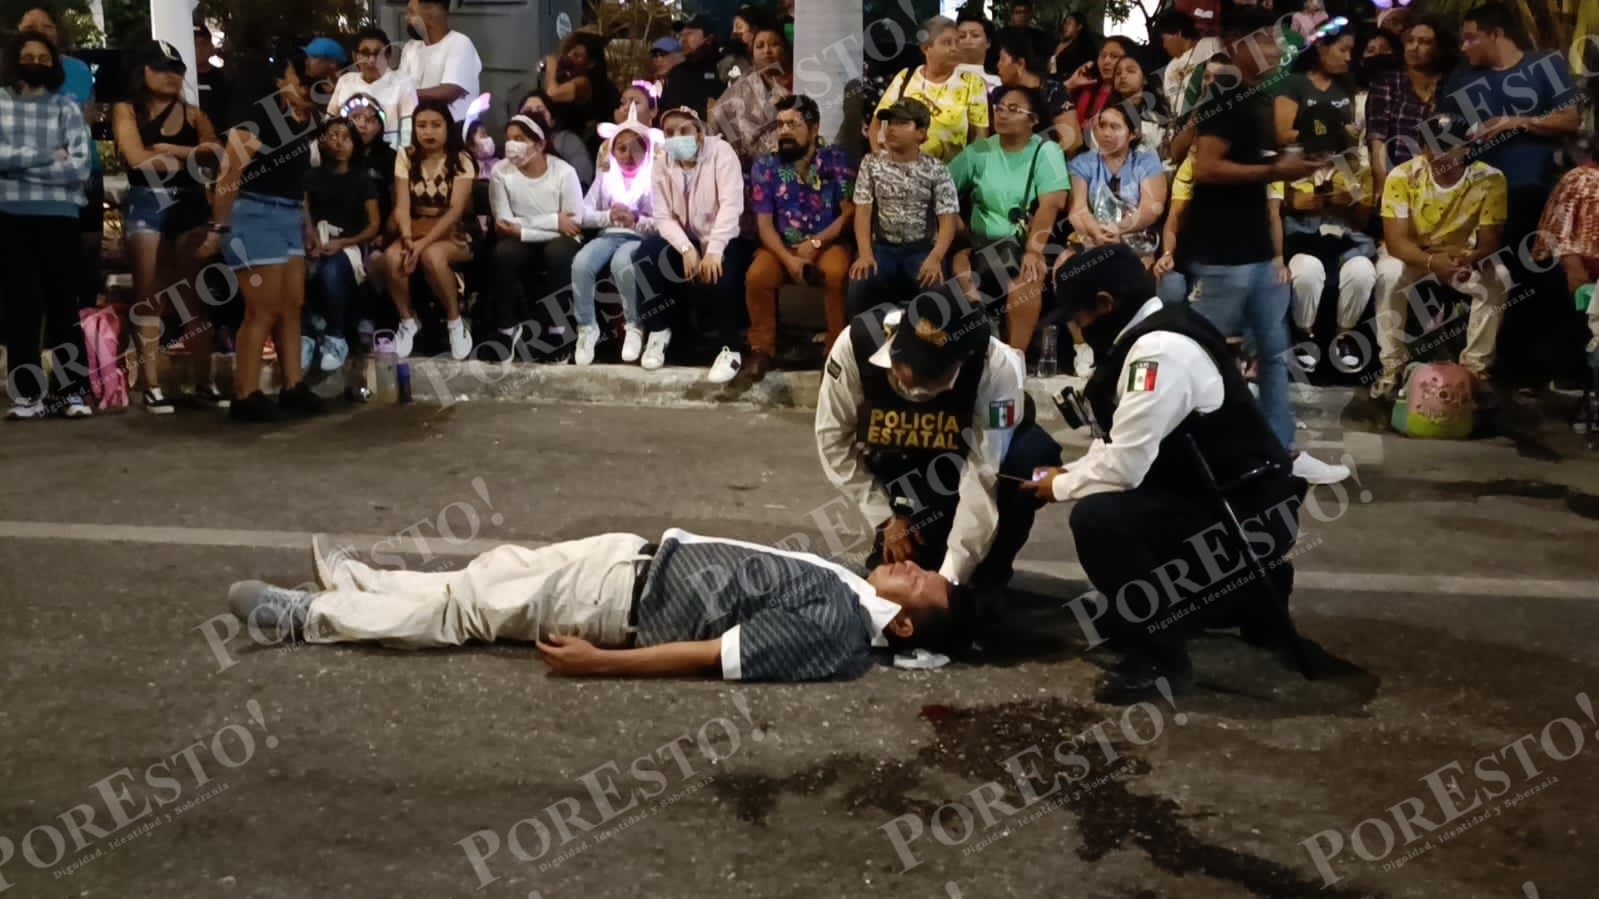 Ebrio intenta subir a carro alegórico del Carnaval de Campeche y queda grave